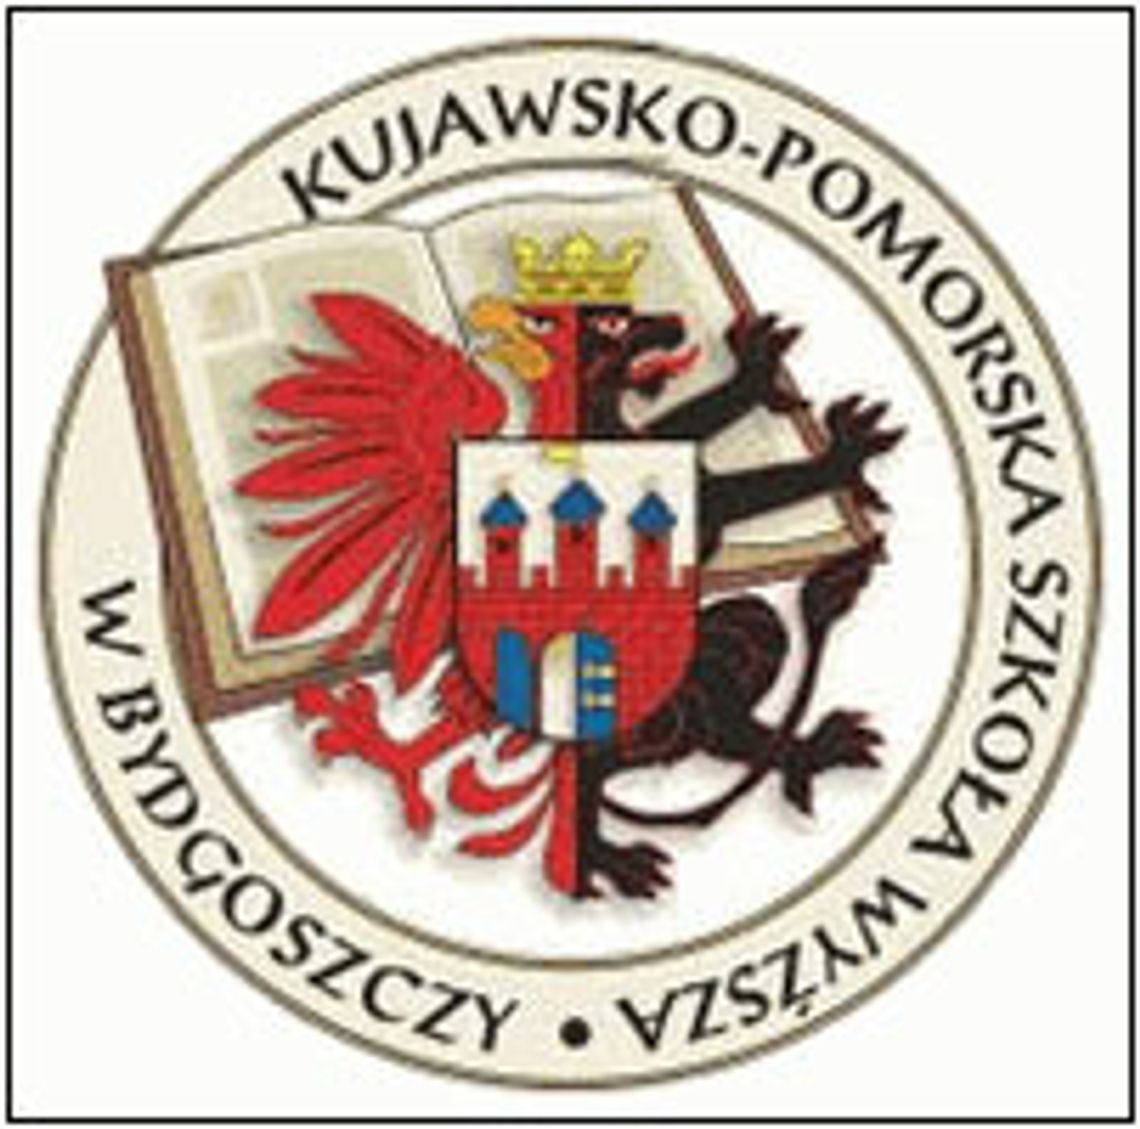 Kujawsko Pomorska Szkoła Wyzsza w Bydgoszczy